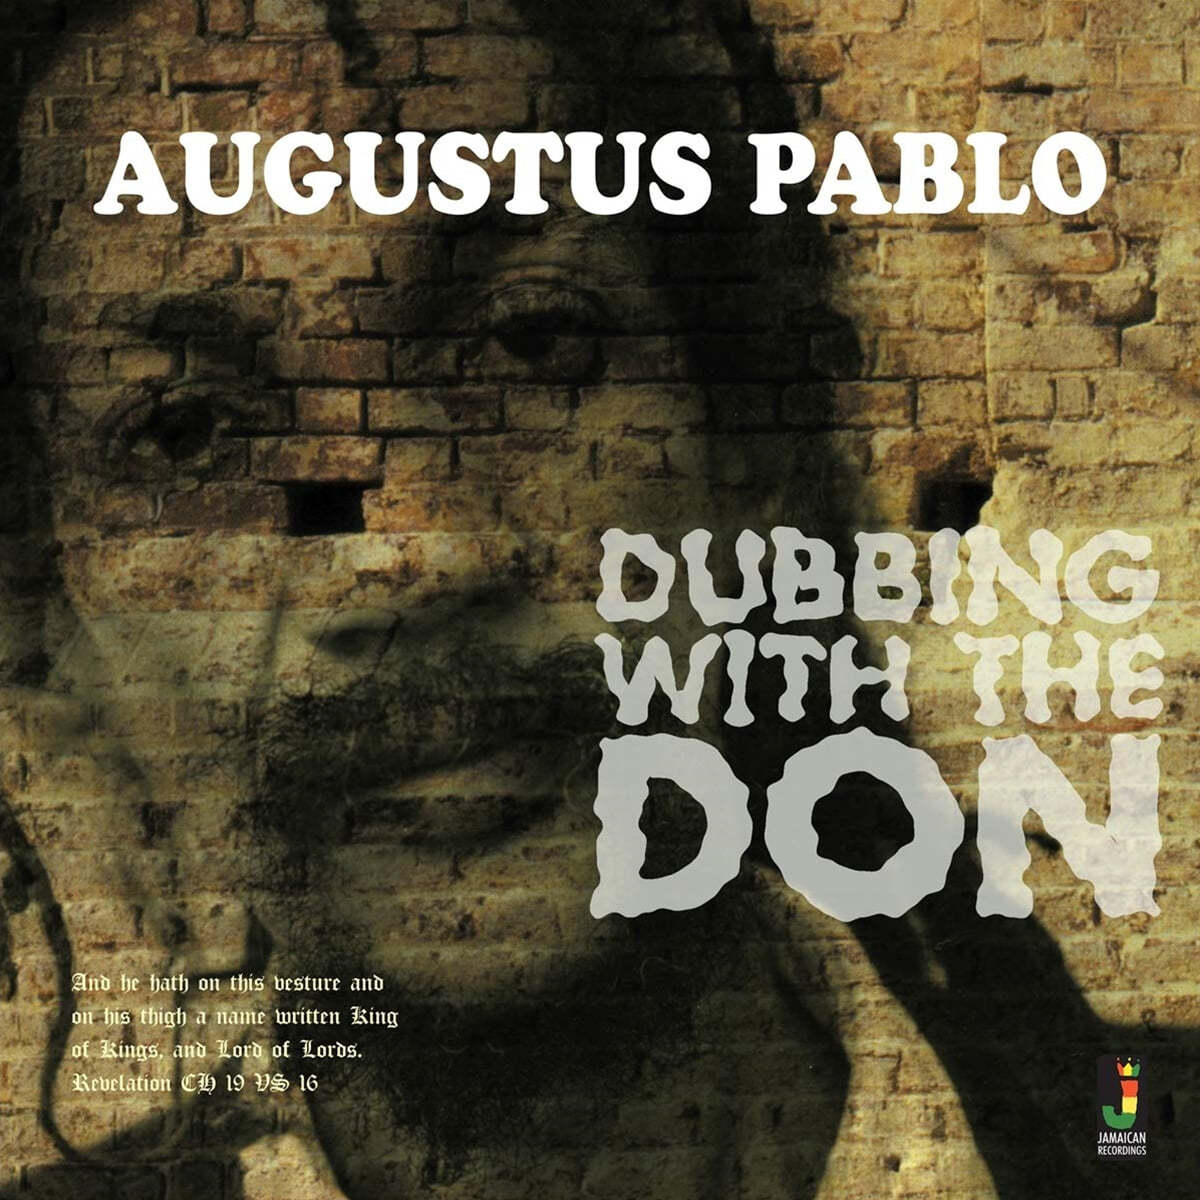 Augustus Pablo (아우구스투스 파블로) - Dubbing With The Don [LP] 